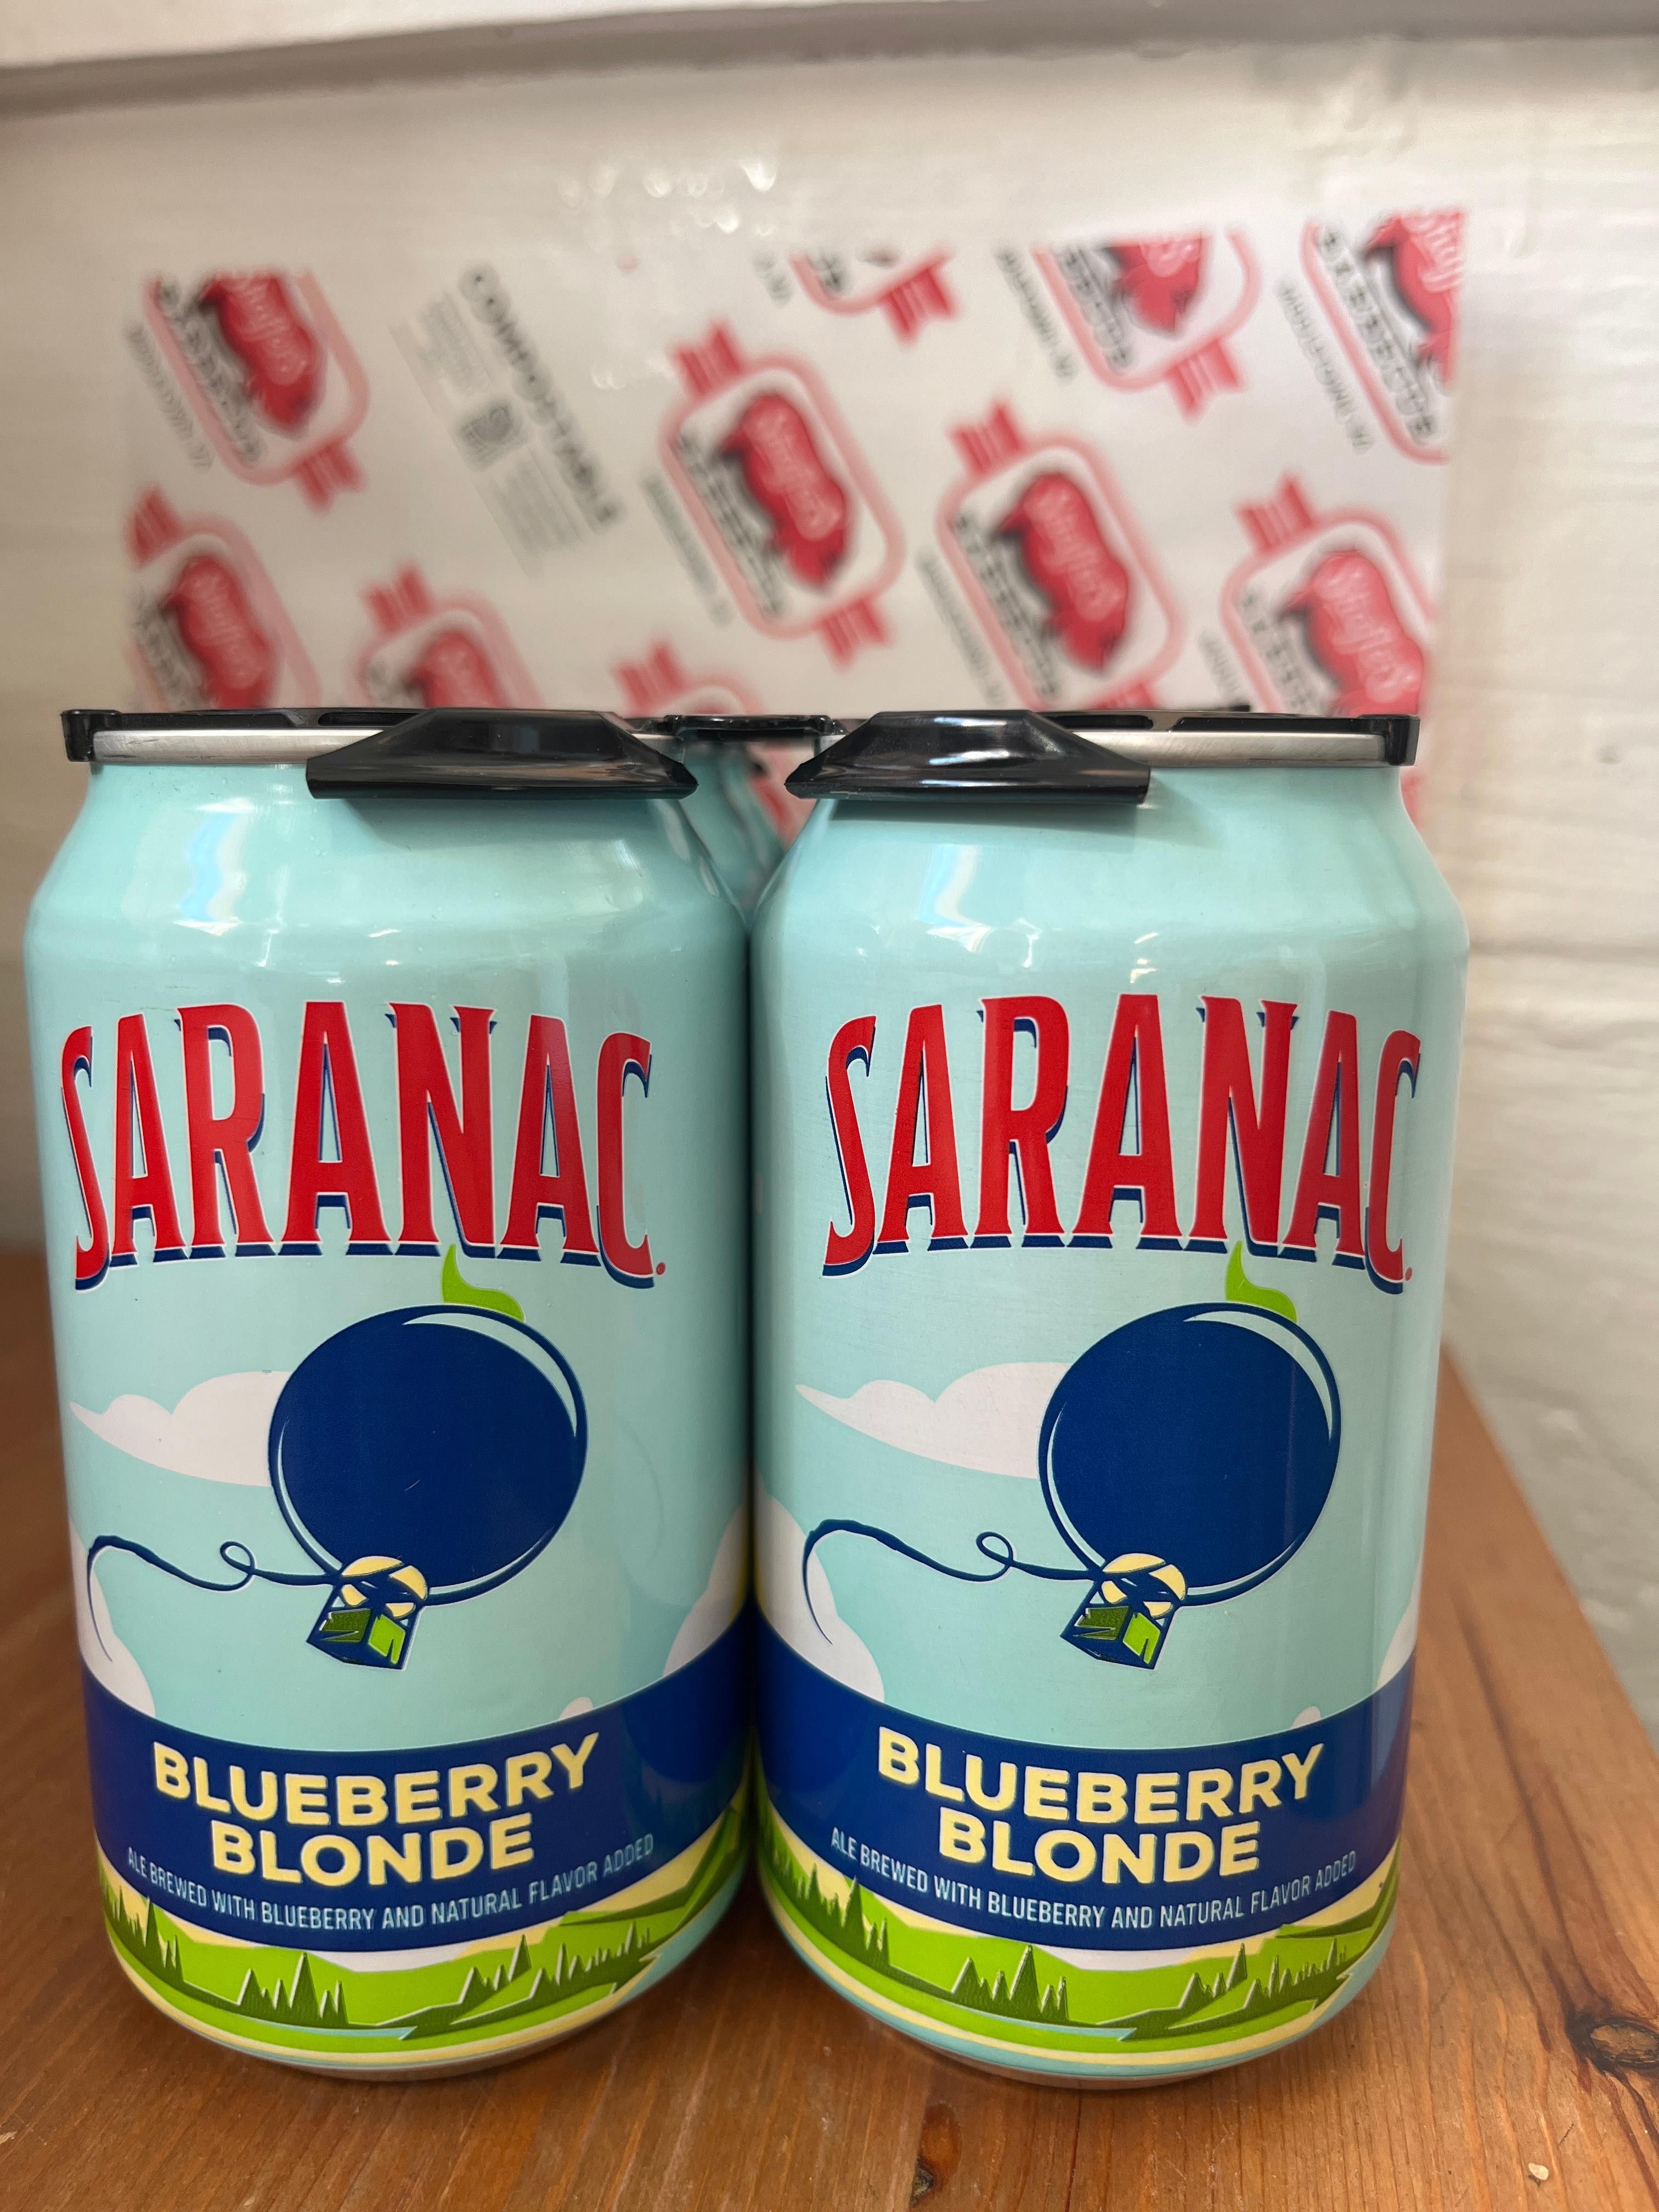 Saranac Blueberry Blonde